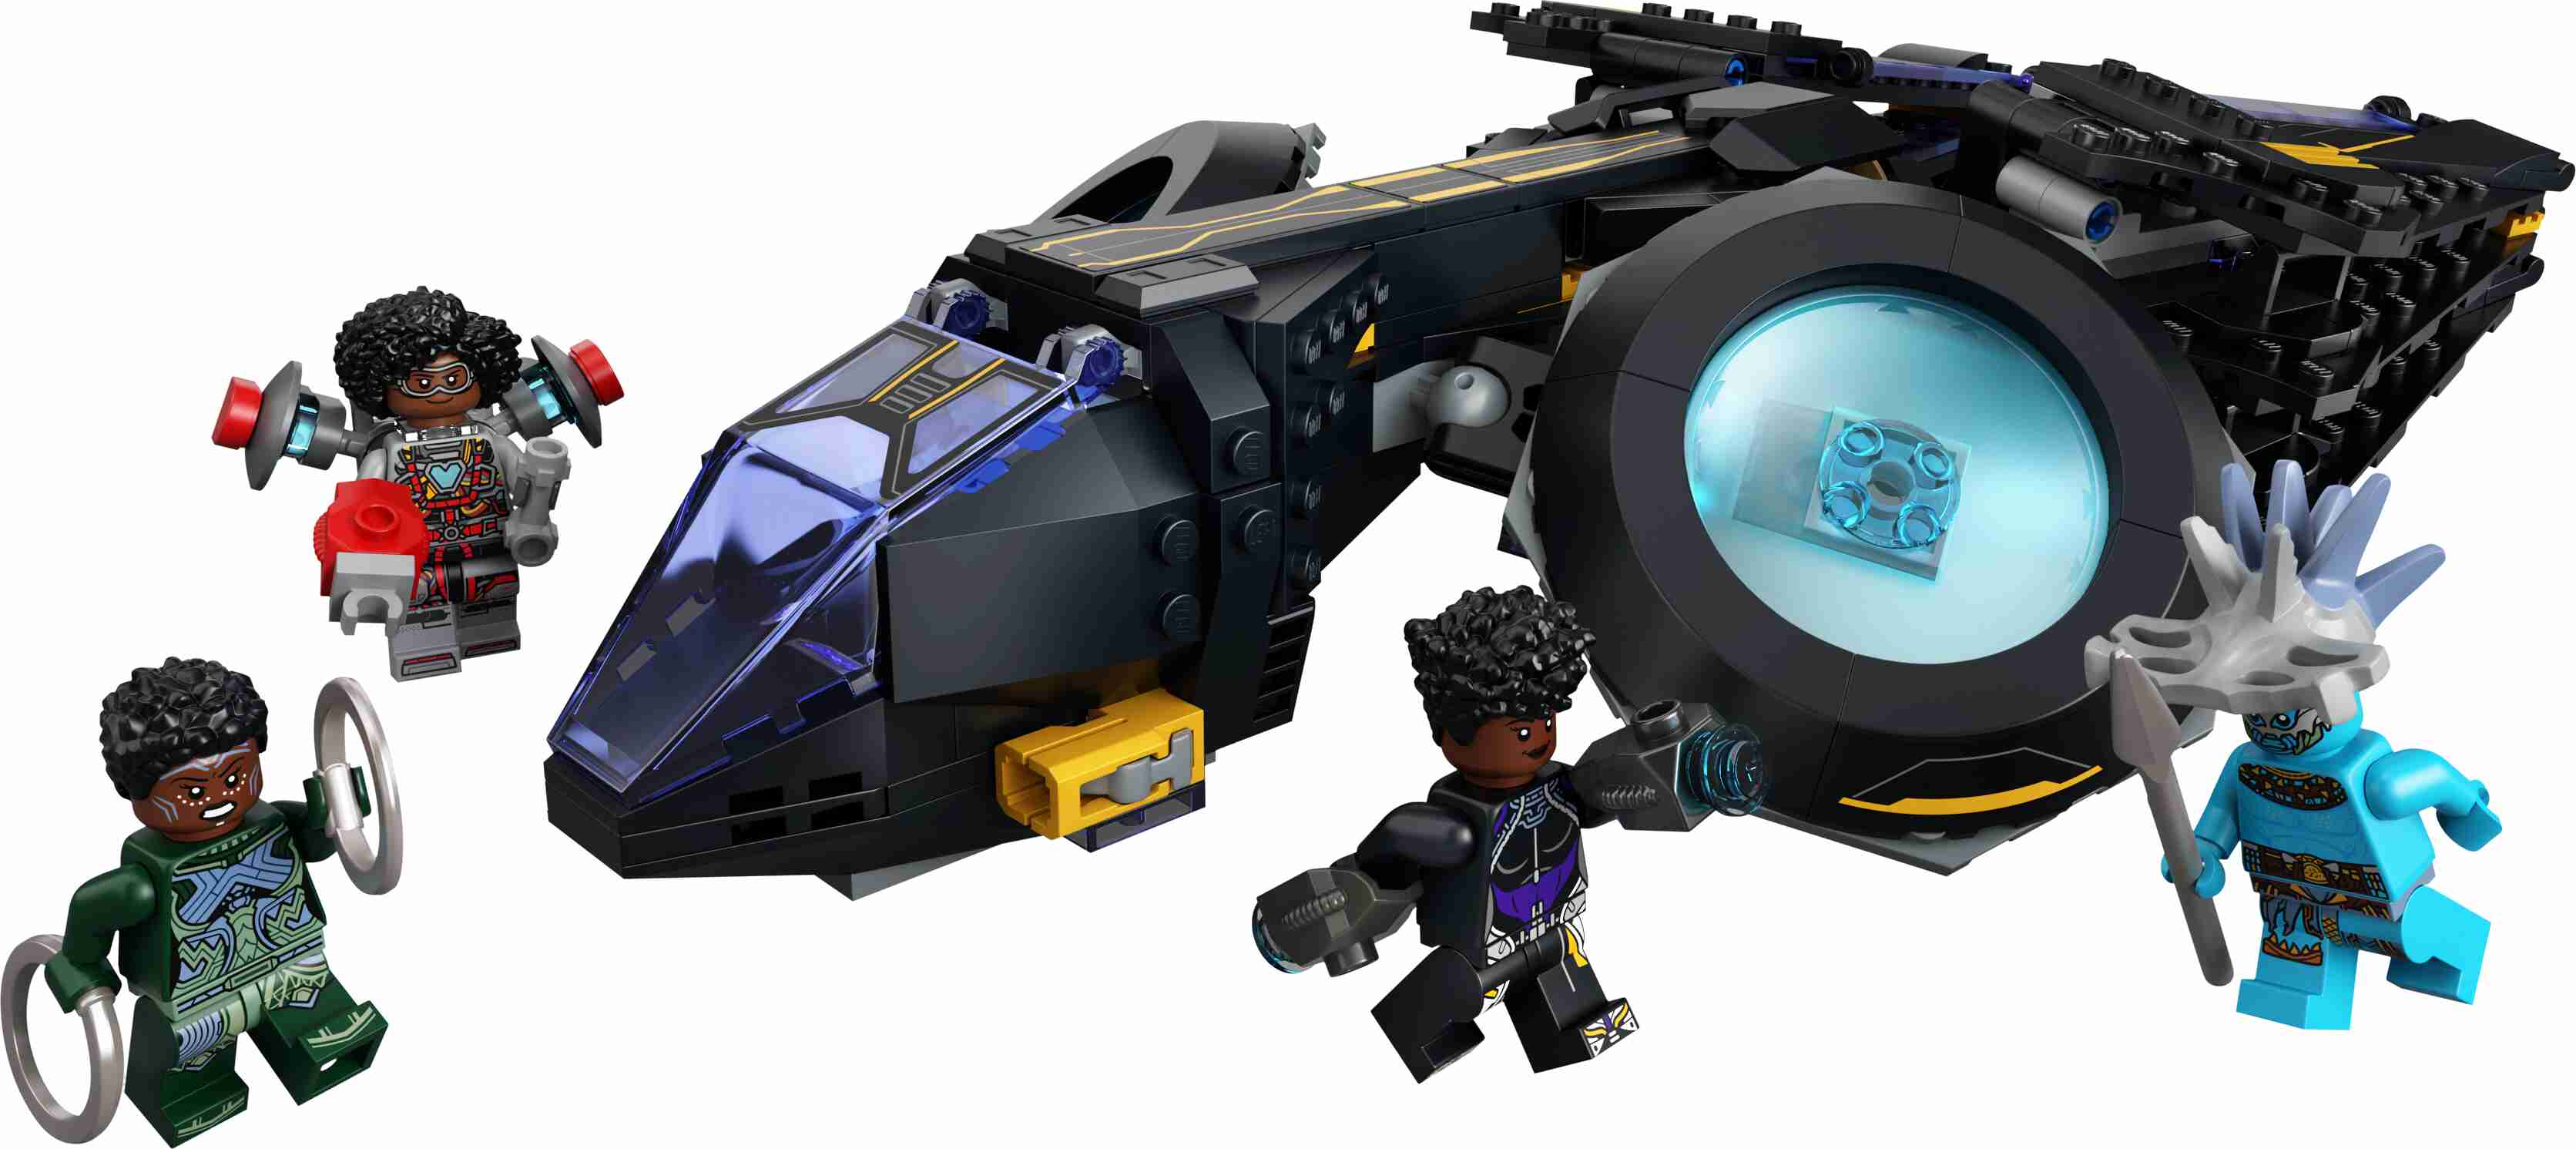 LEGO 76211 Marvel Shuris Sonnenvogel, Black Panther, Luftschiff, Wakanda Forever